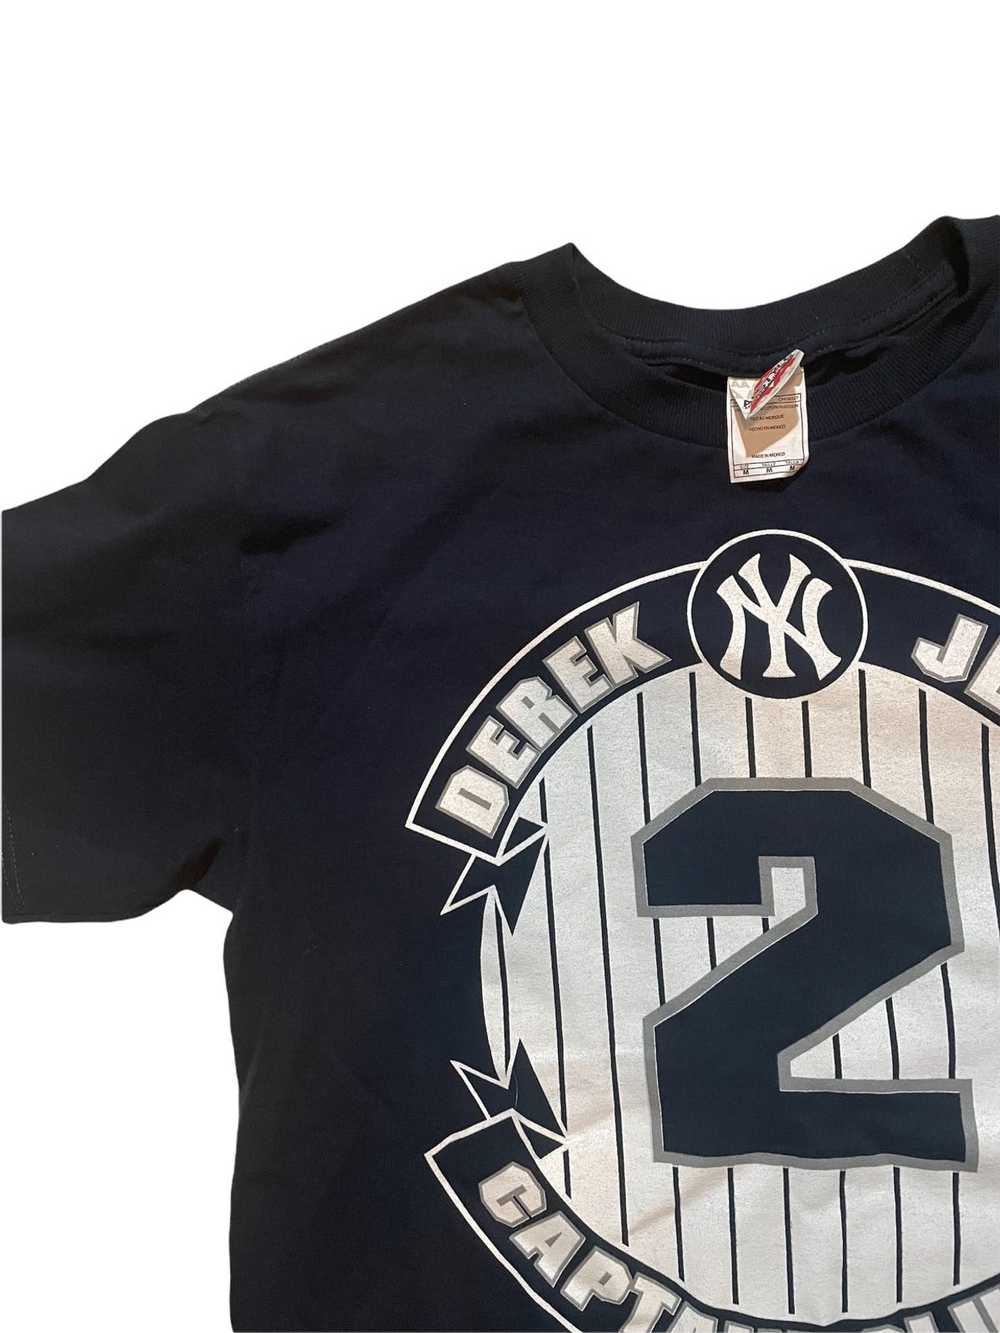 Majestic MLB New York Yankees Derek Jeter Captain Men's T-Shirt, XL